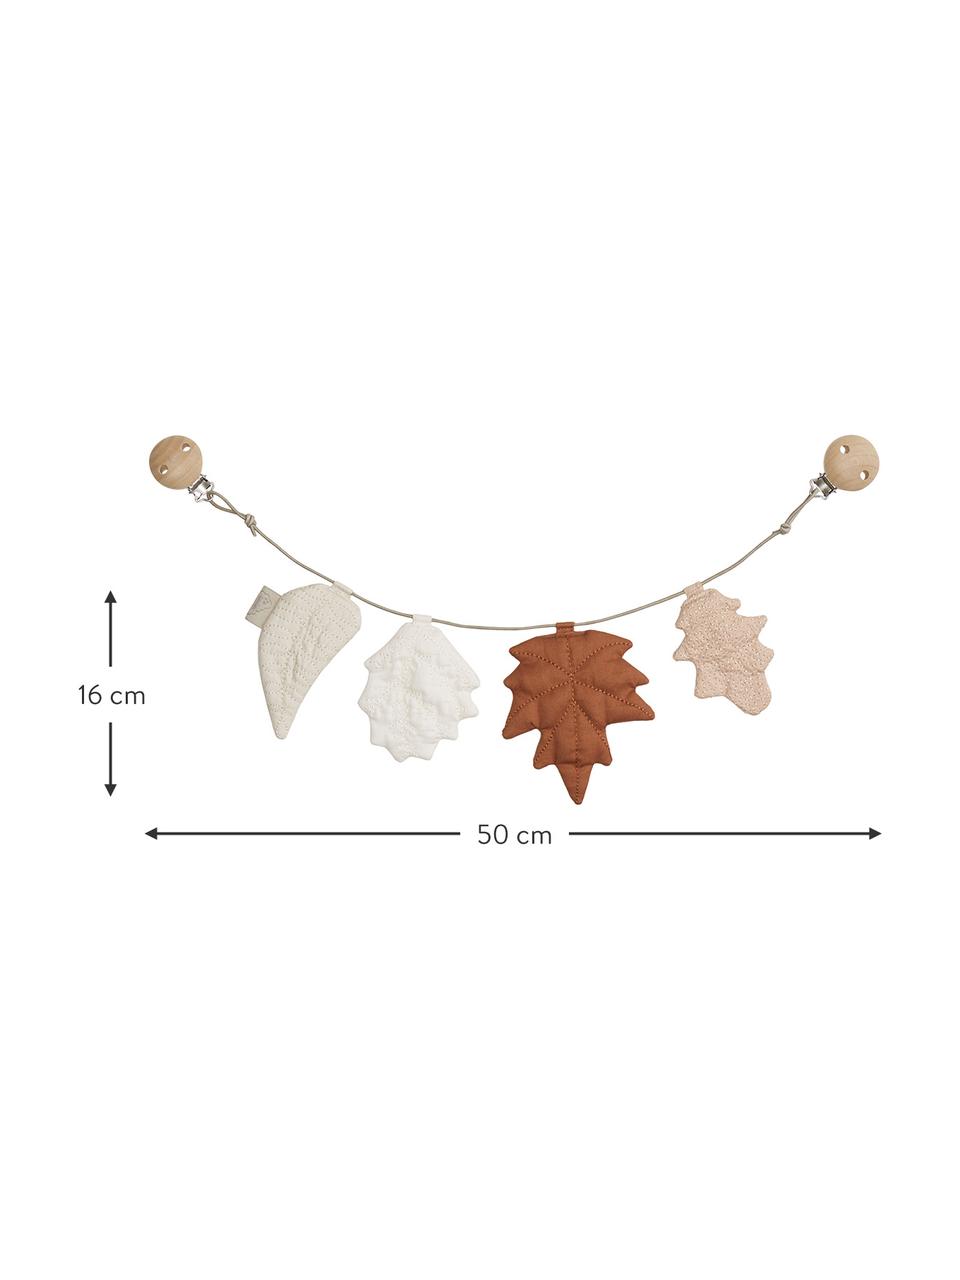 Guirnalda para carrito de algodón ecológico Leaves, 100% algodón ecológico, Marrón, tonos beige, L 50 x Al 16 cm